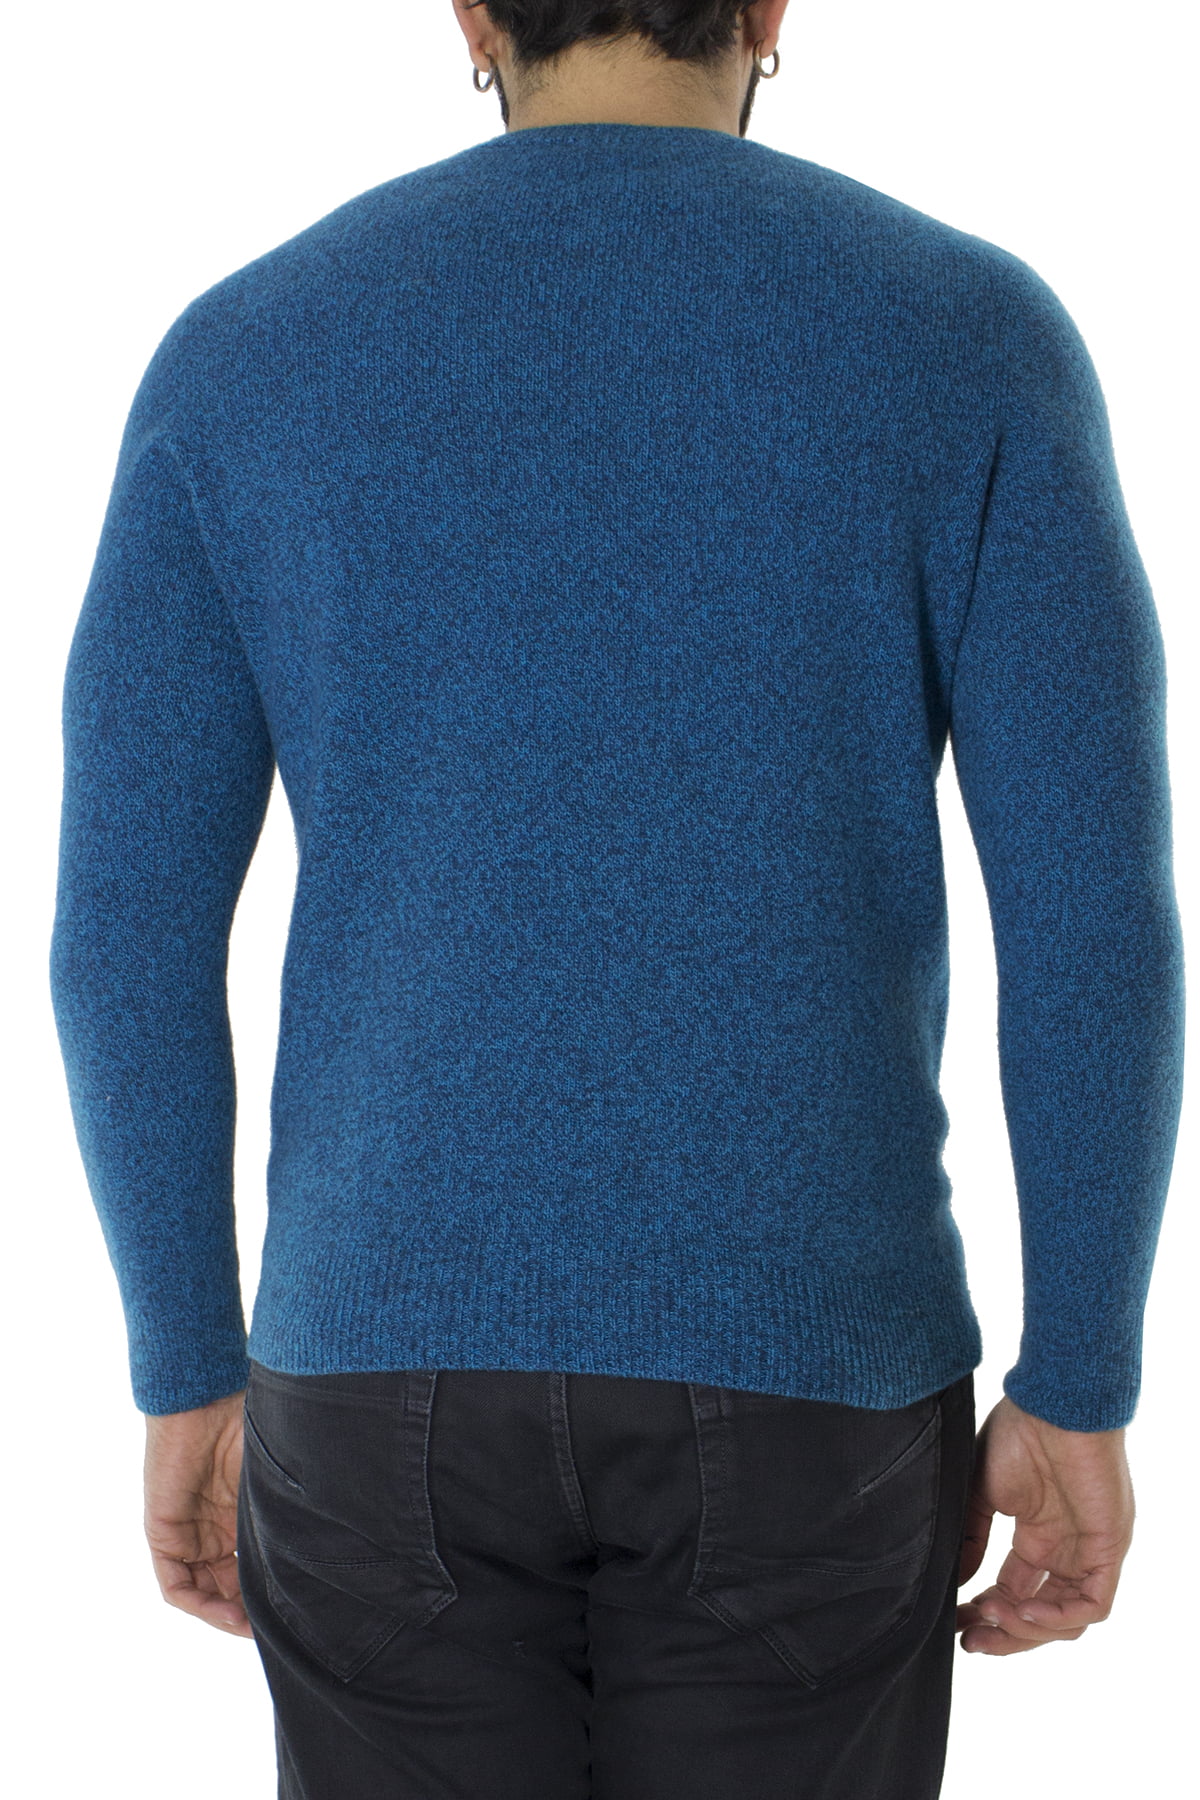 Maglione uomo Girocollo turchese effetto melange blu in lana 100% slim fit